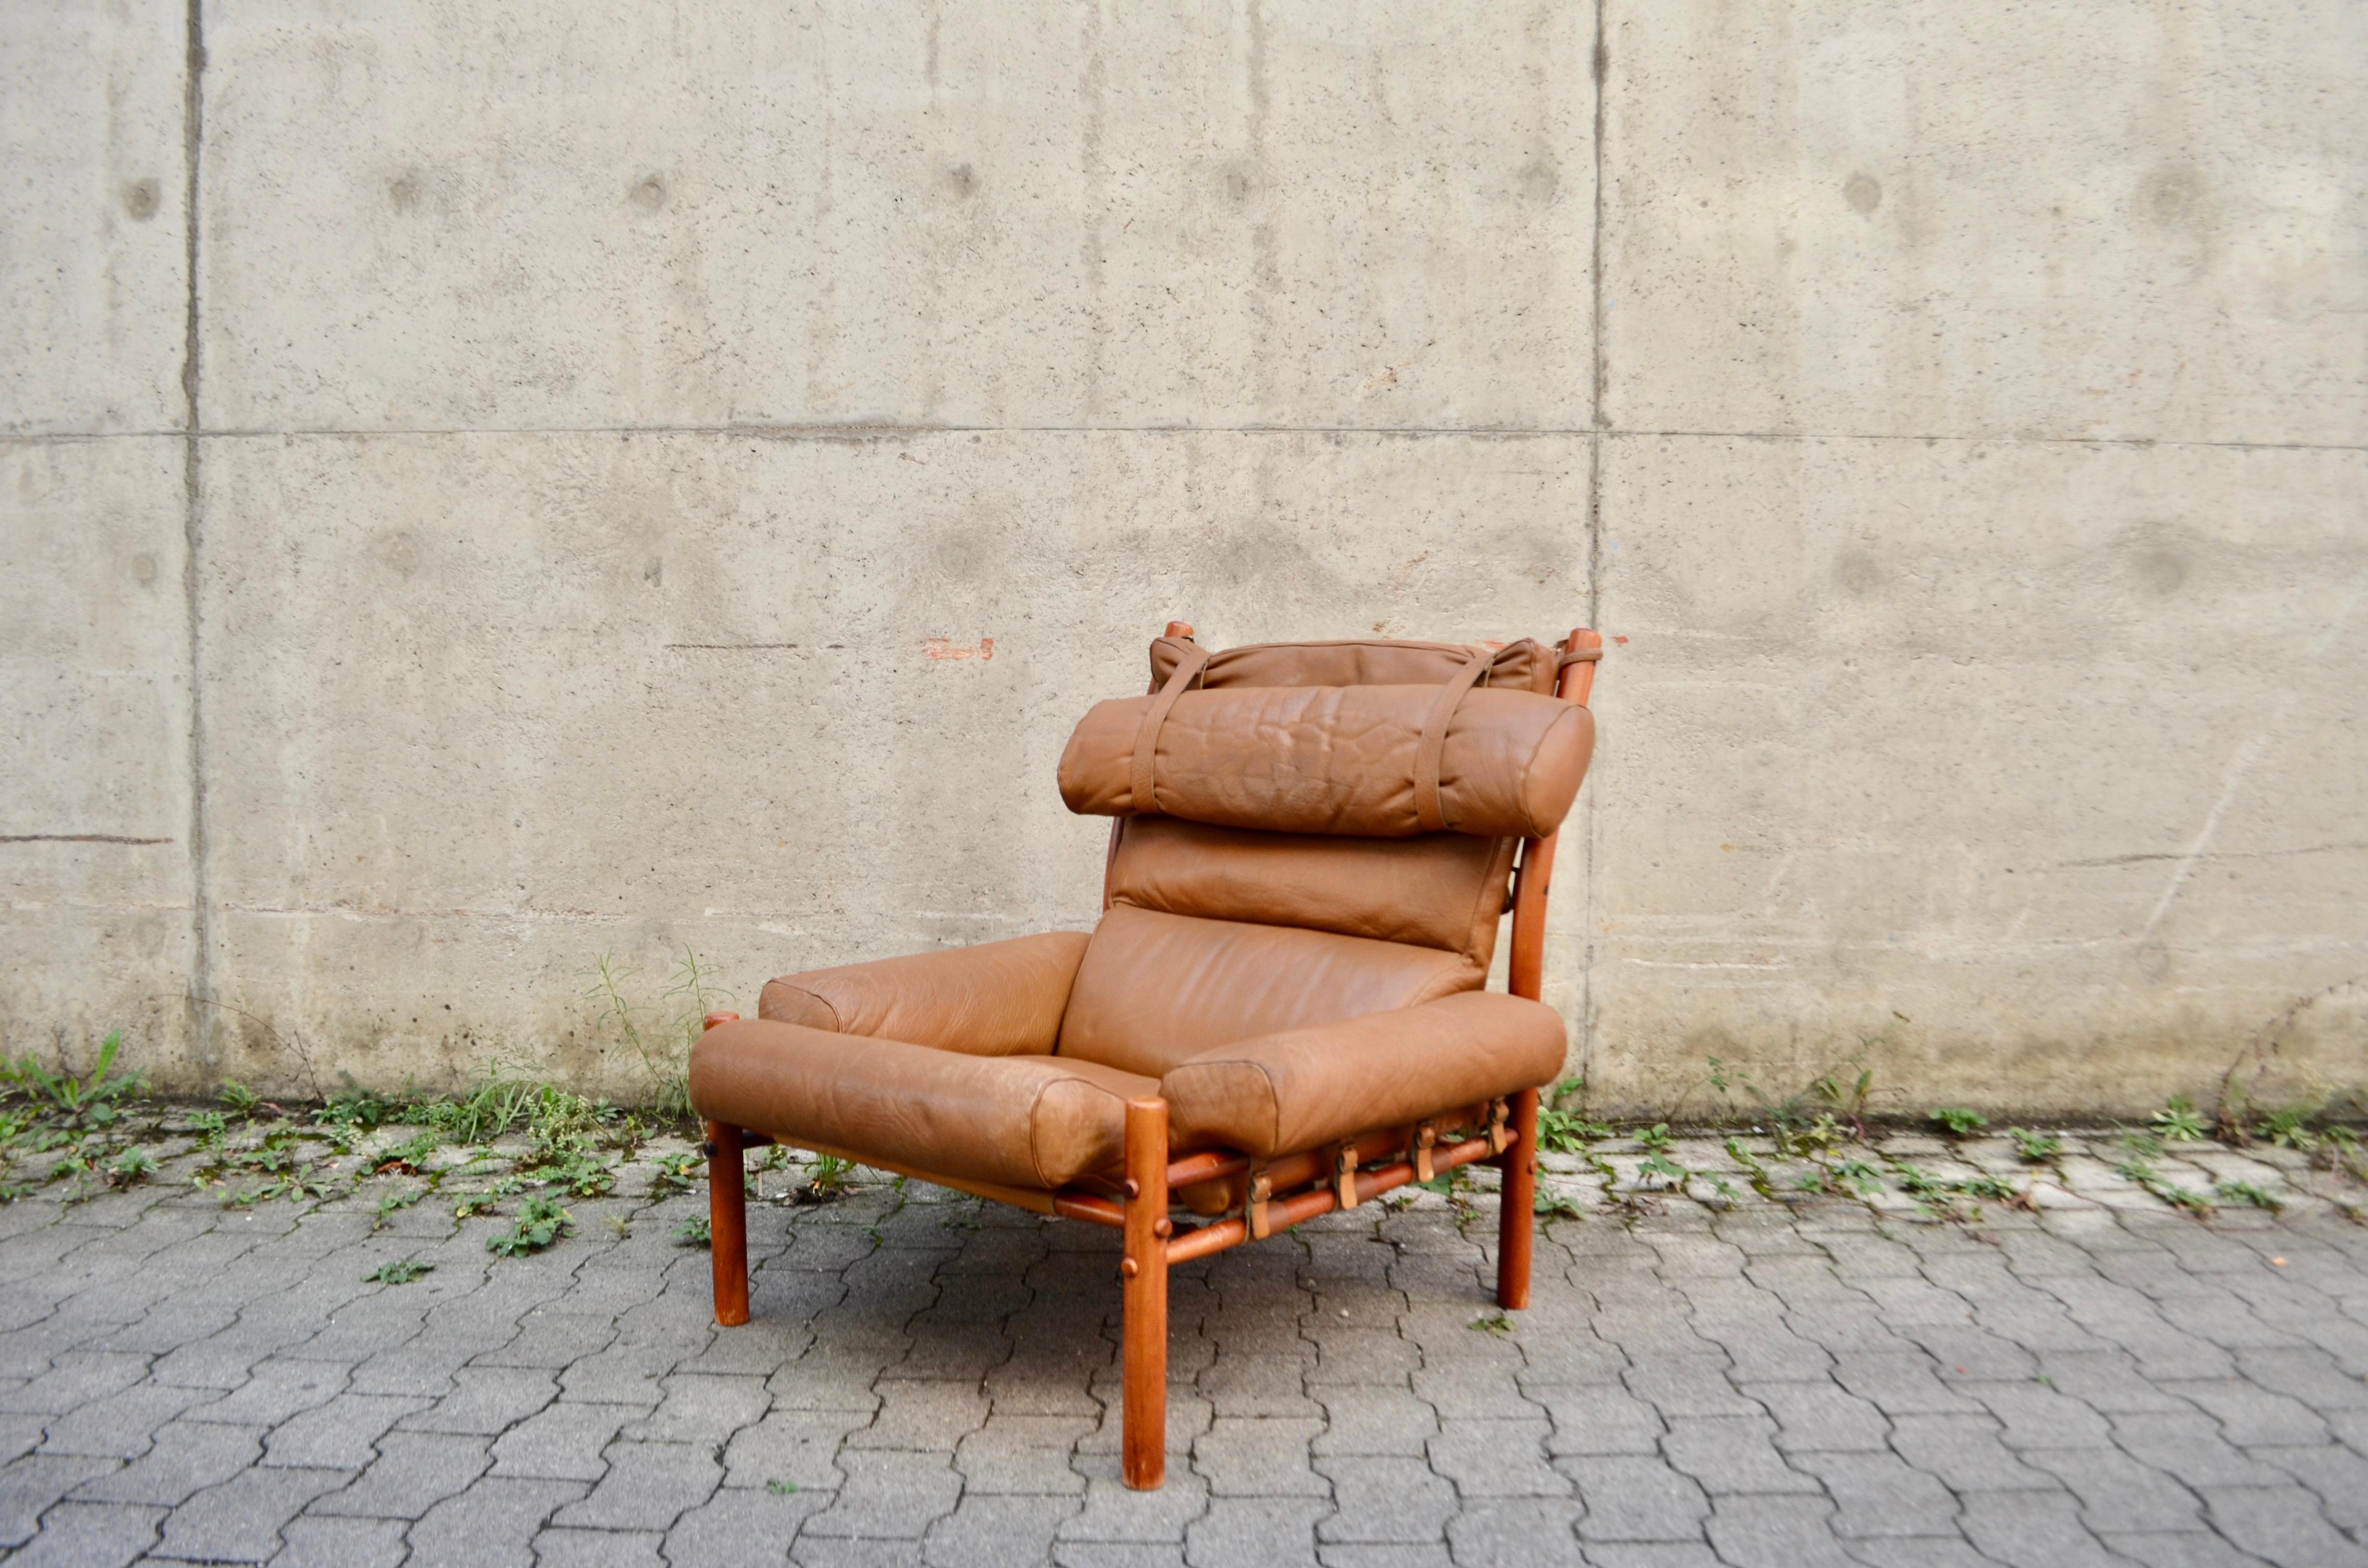 Der Lounge-Sessel Inca aus karamellbraunem Leder wurde von Arne Norell entworfen und von Norell Mobler AB in Schweden hergestellt. 
Er ist aus Buche gefertigt, teakfarben gebeizt und mit braunem Original-Karamellleder gepolstert.
Tolle Lederdetails